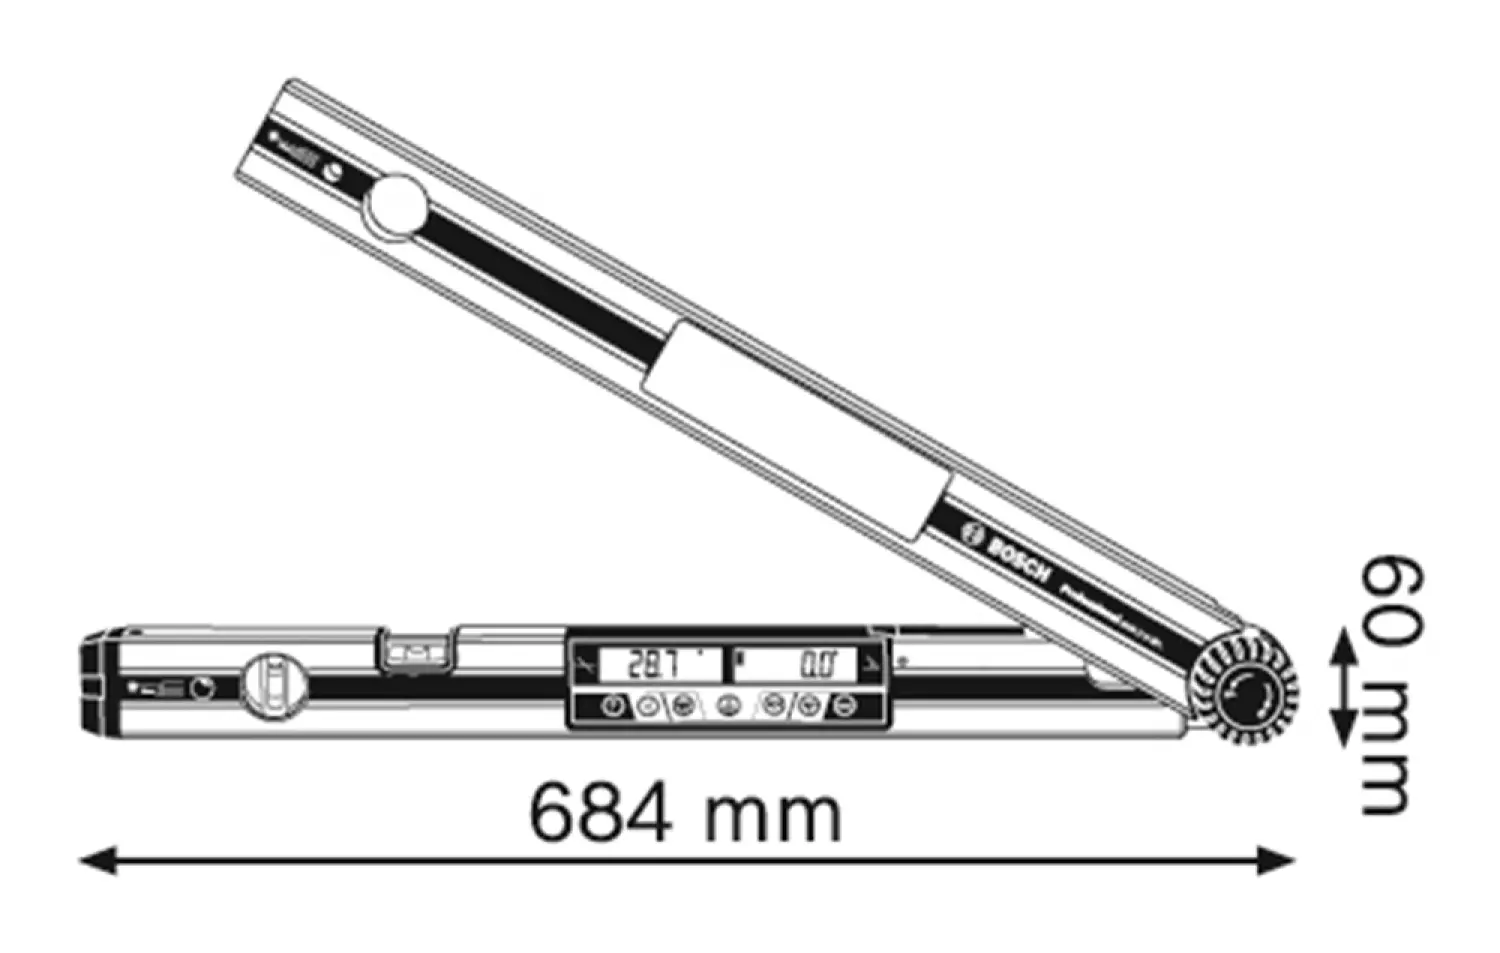 Bosch GAM 270 MFL mesureur d'angle numérique en sac - 270